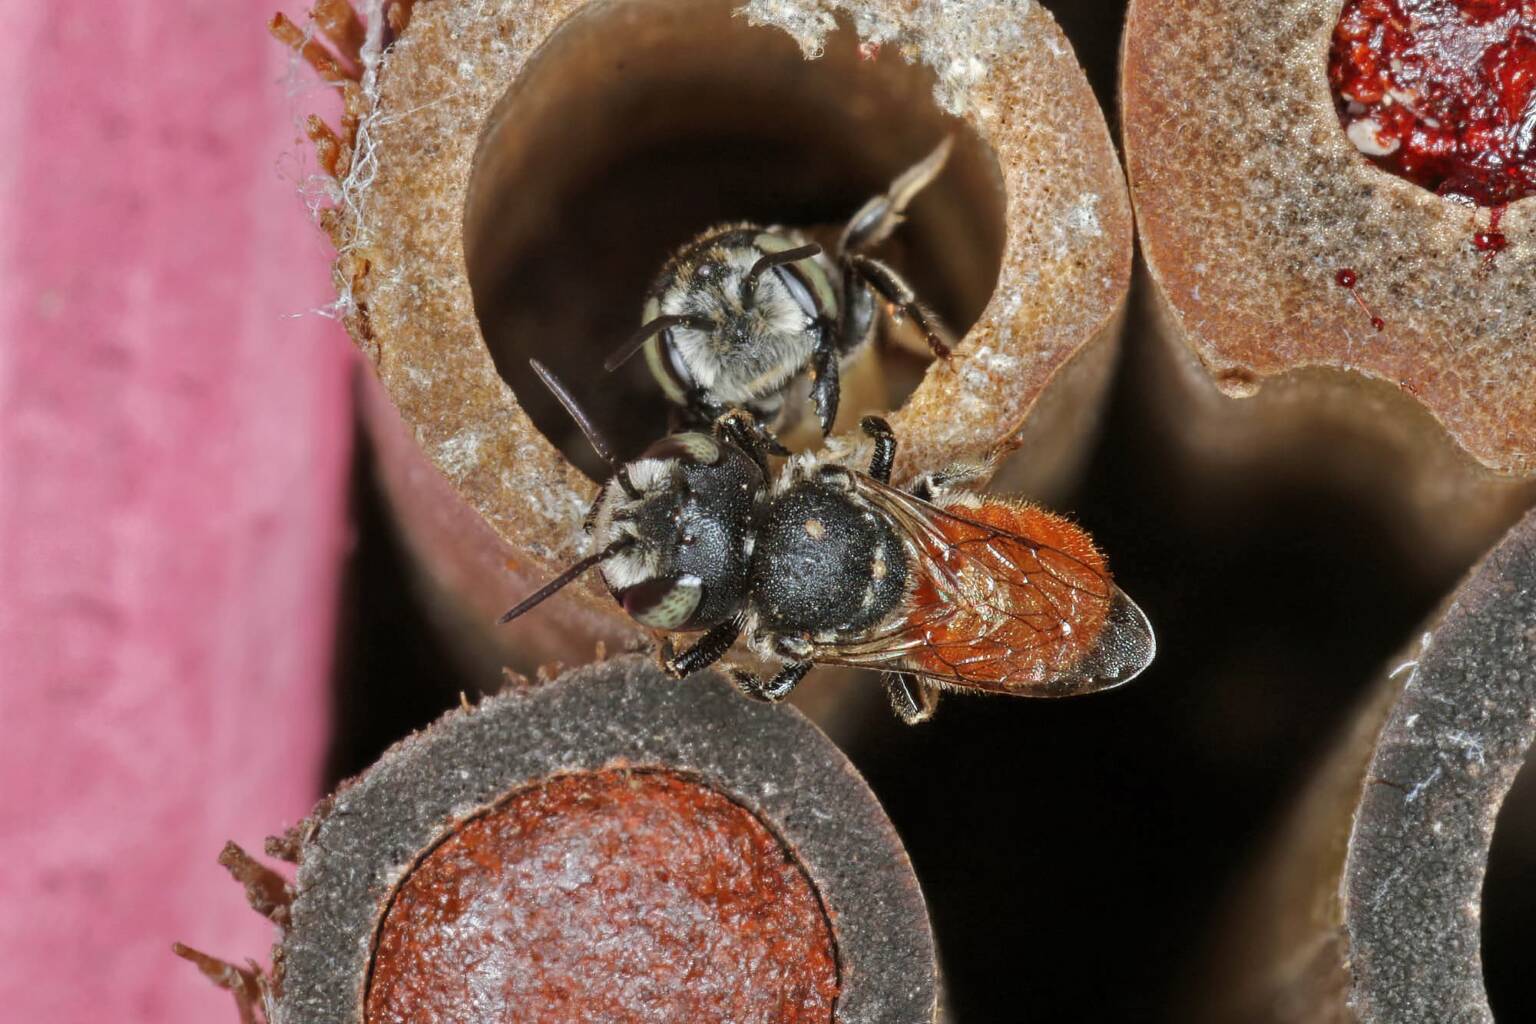 Megachile (Rhodomegachile) deanii, Ballandean QLD © Marc Newman